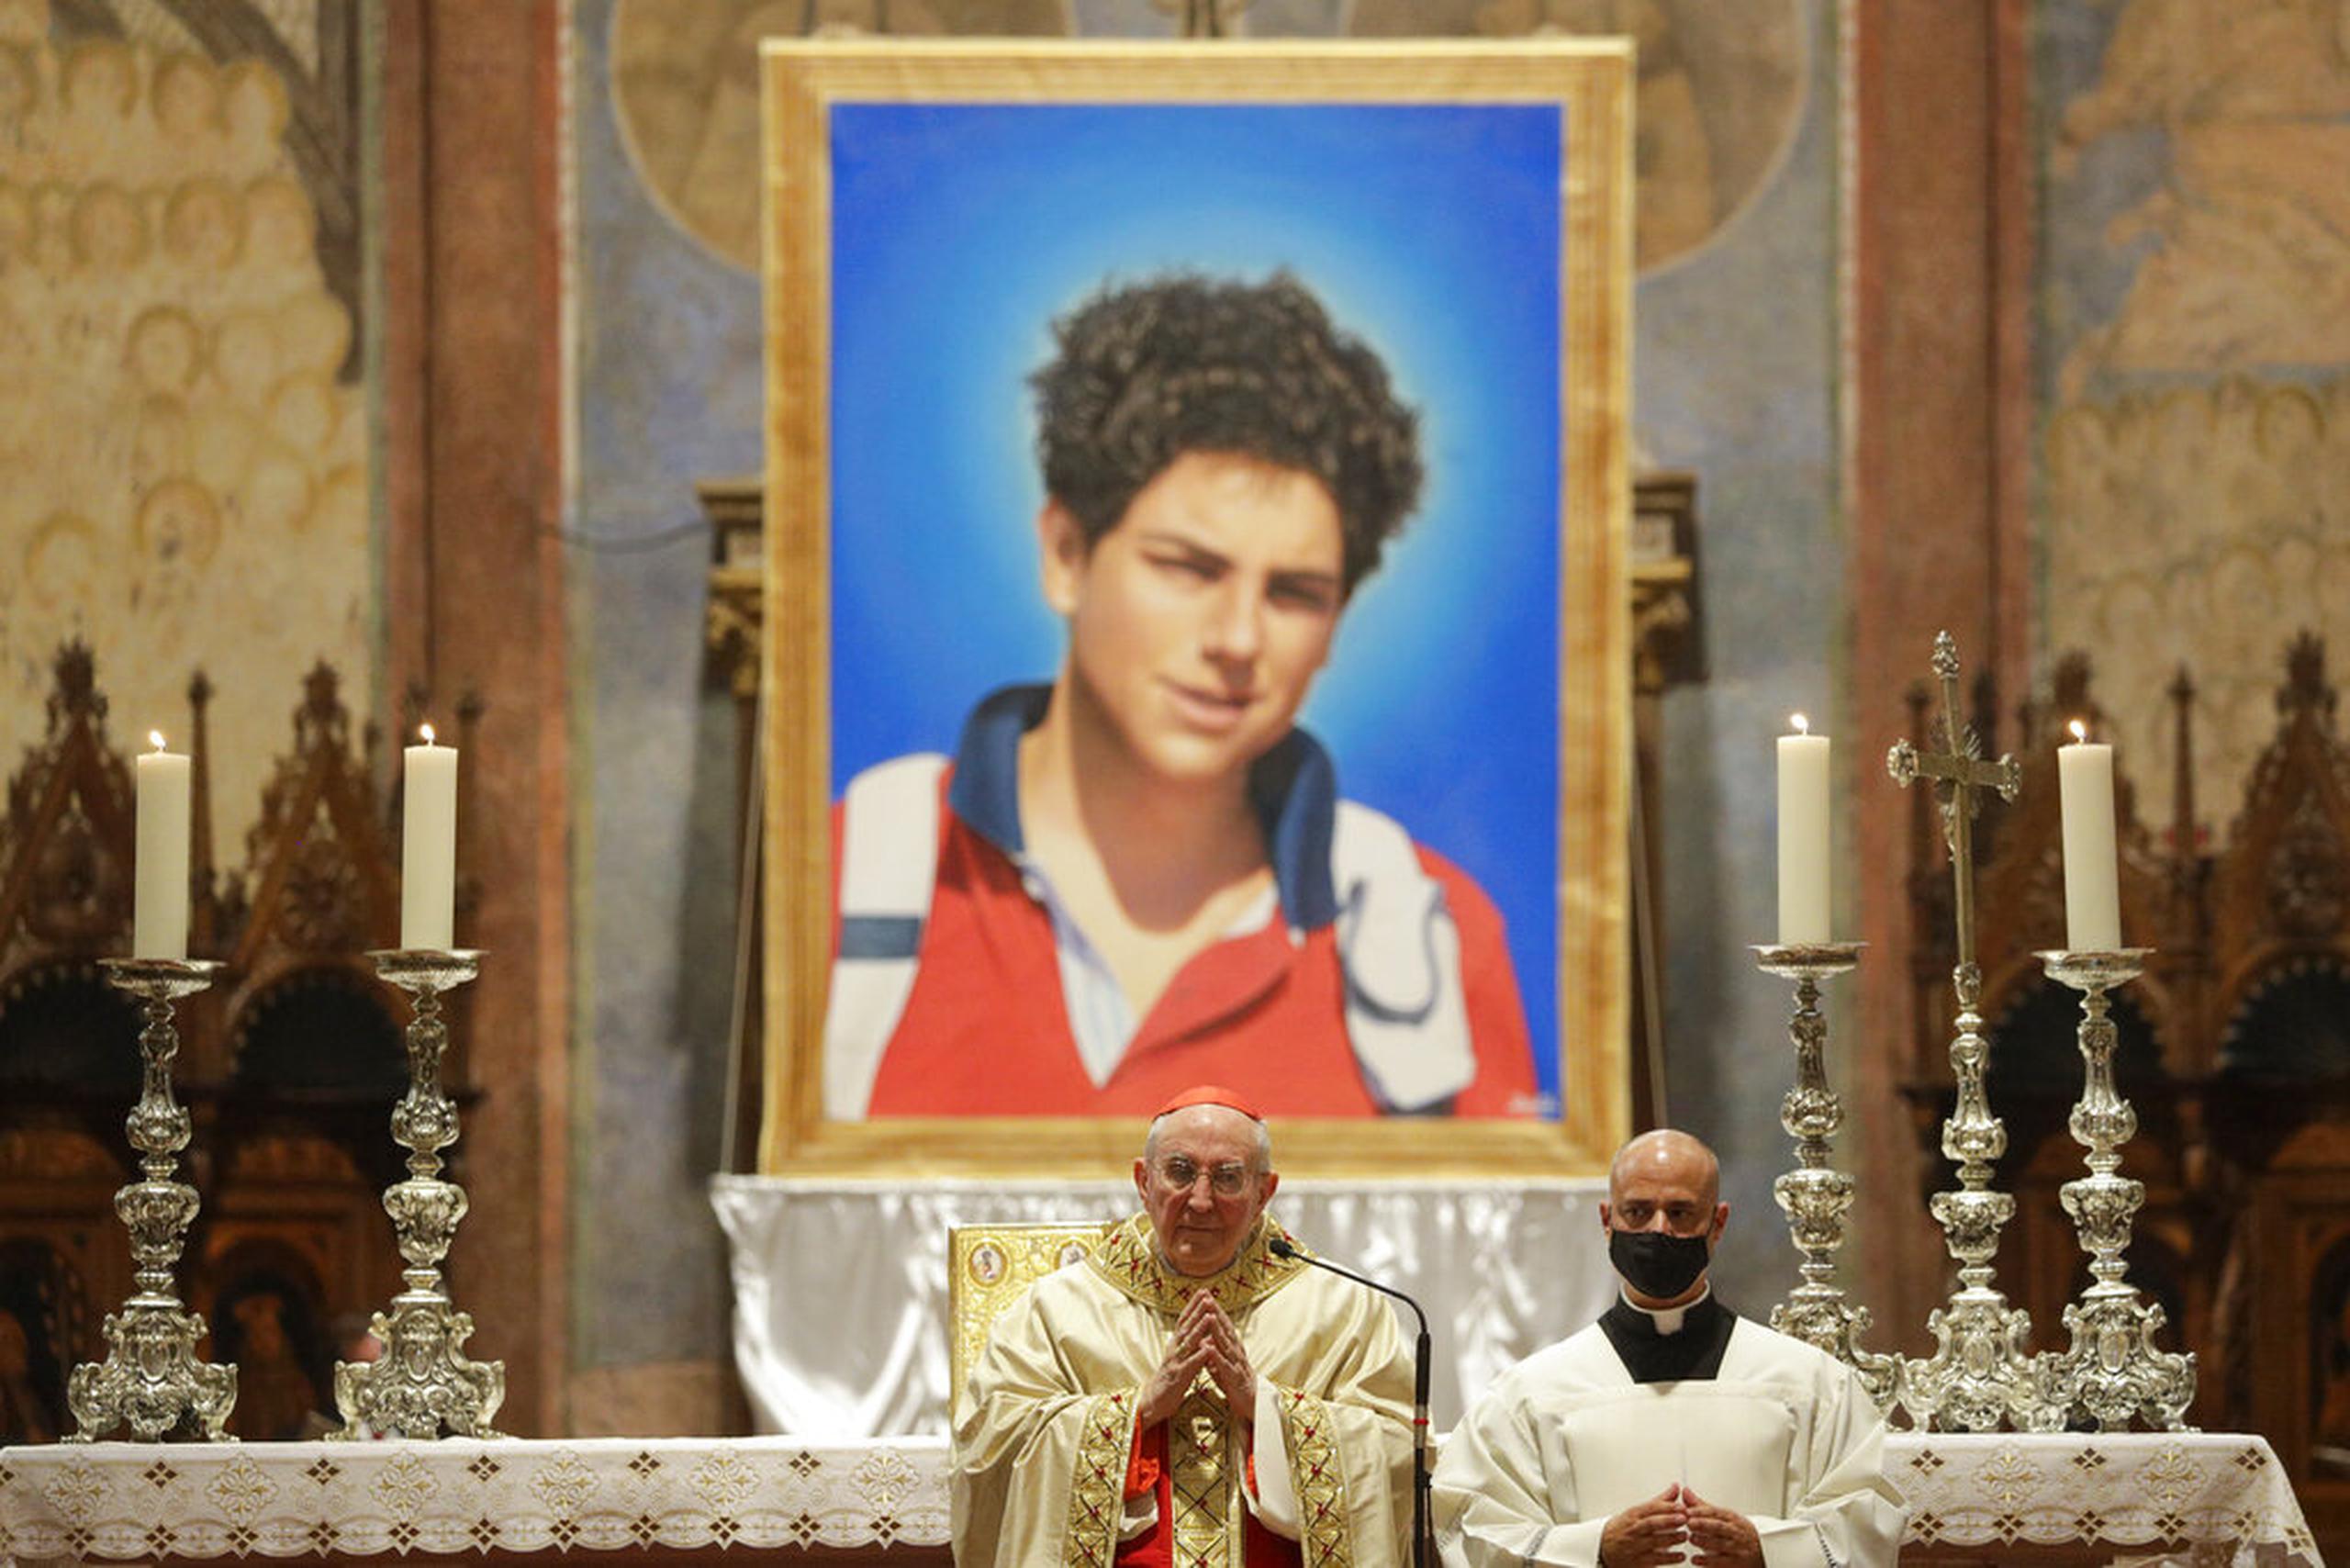 Una imagen del chico italiano Carlo Acutis, de 15 años, que falleció en 2006 de leucemia, es presentada durante su beatificación en una ceremonia a cargo del cardenal Agostino Vallini, al centro, en la Basílica de San Francisco, en Asís, Italia.